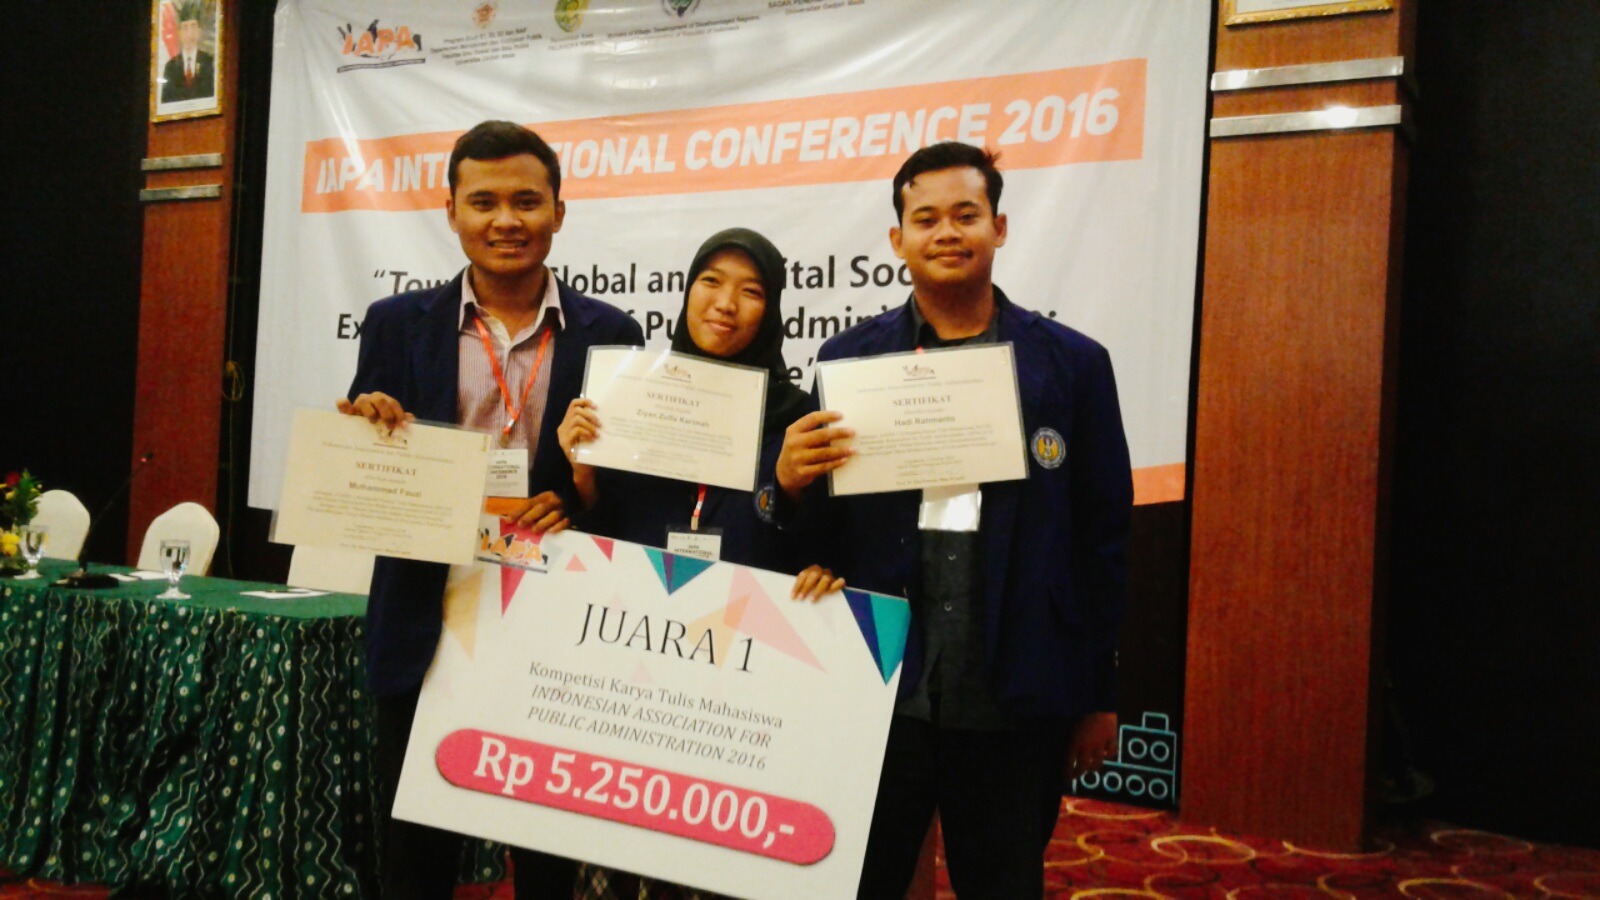 Foto Kompetisi Karya Tulis Mahasiswa (KKTM) Indonesian Association for Public Administration (IAPA) 2016